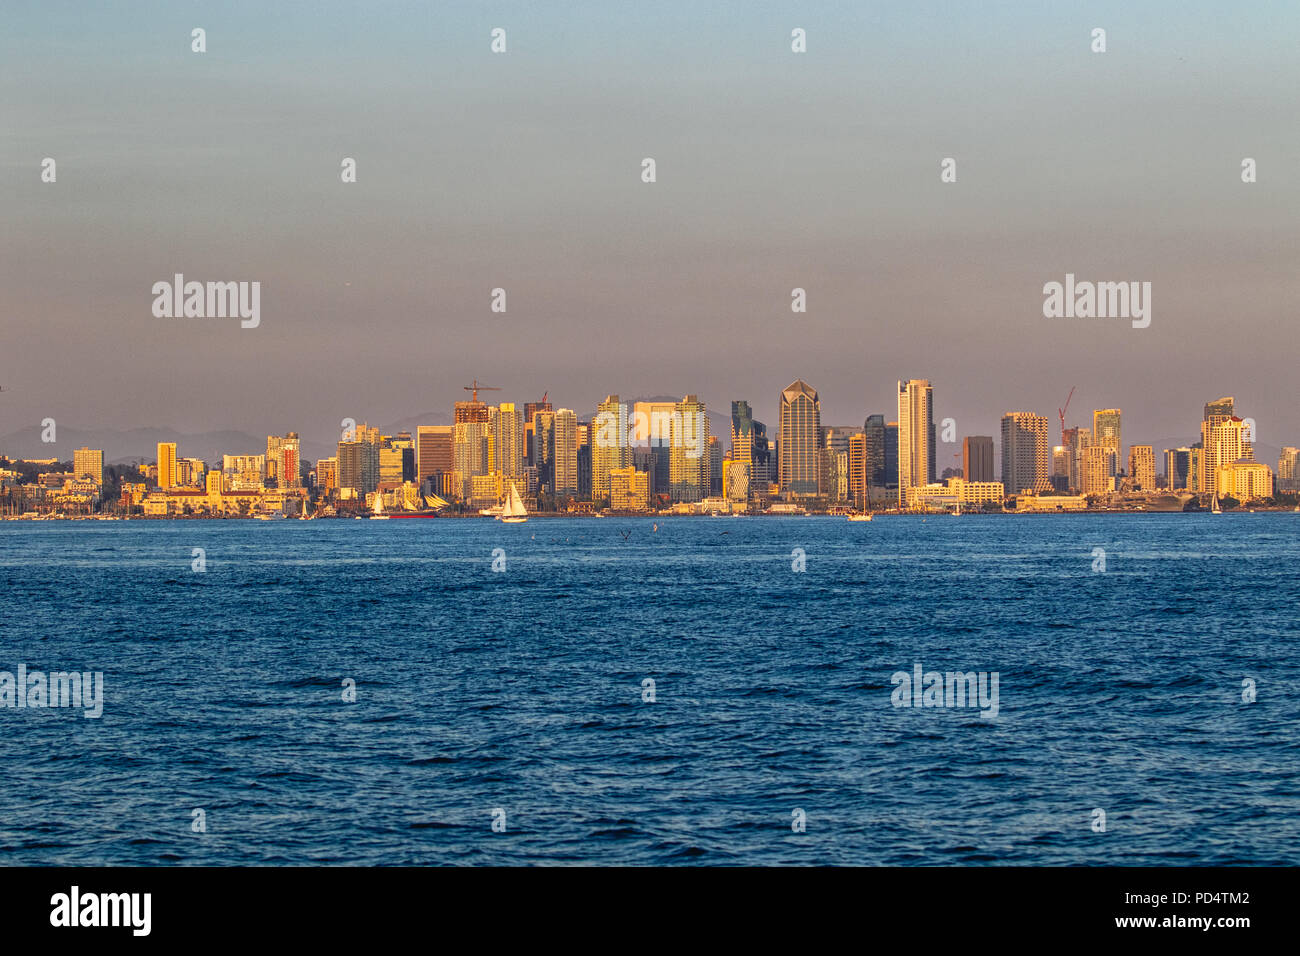 SAN DIEGO, CA, USA - JULY 14:  San Diego Skyline on July 14, 2018 in downtown San Diego, California. Stock Photo